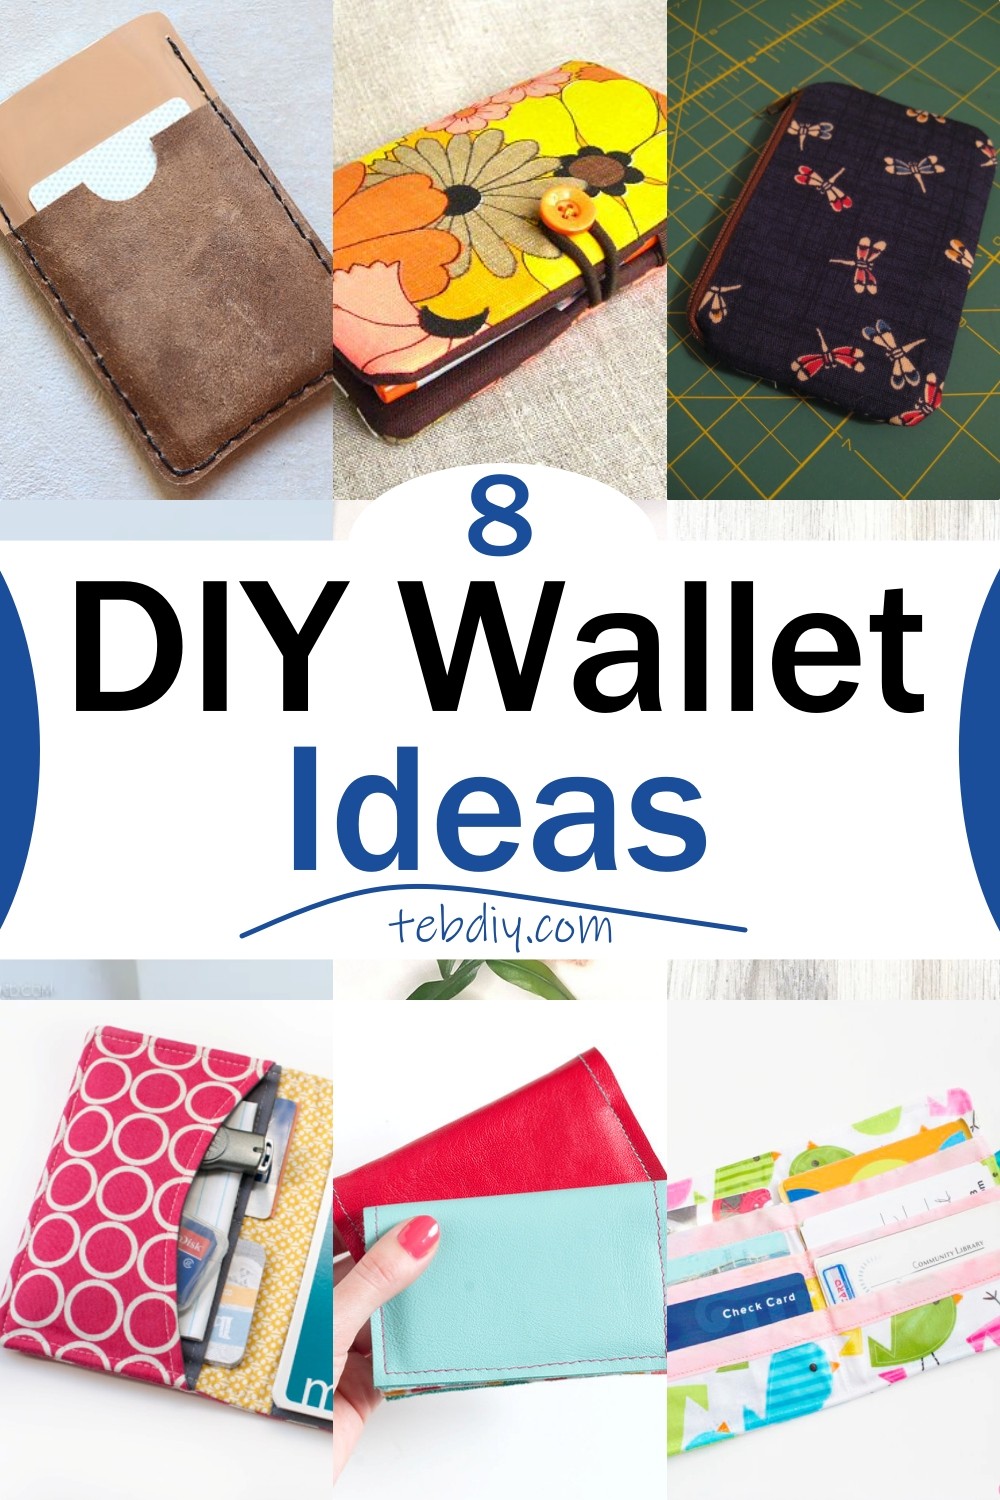 DIY Wallet Ideas